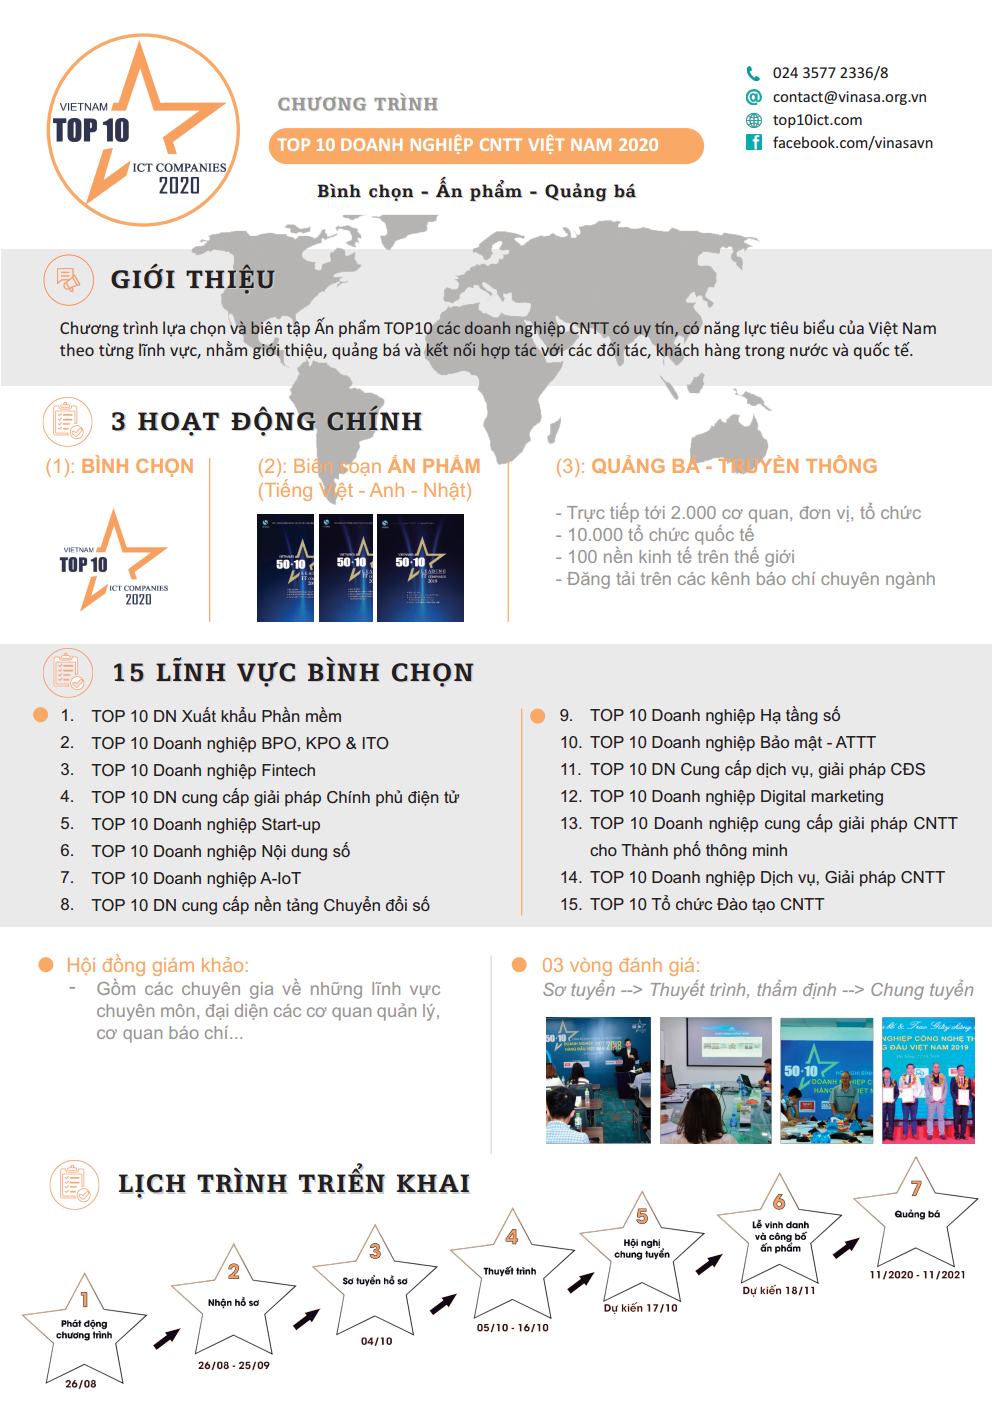 Giới thiệu và hướng dẫn tham gia Chương trình TOP 10 Doanh nghiệp CNTT Việt Nam 2020